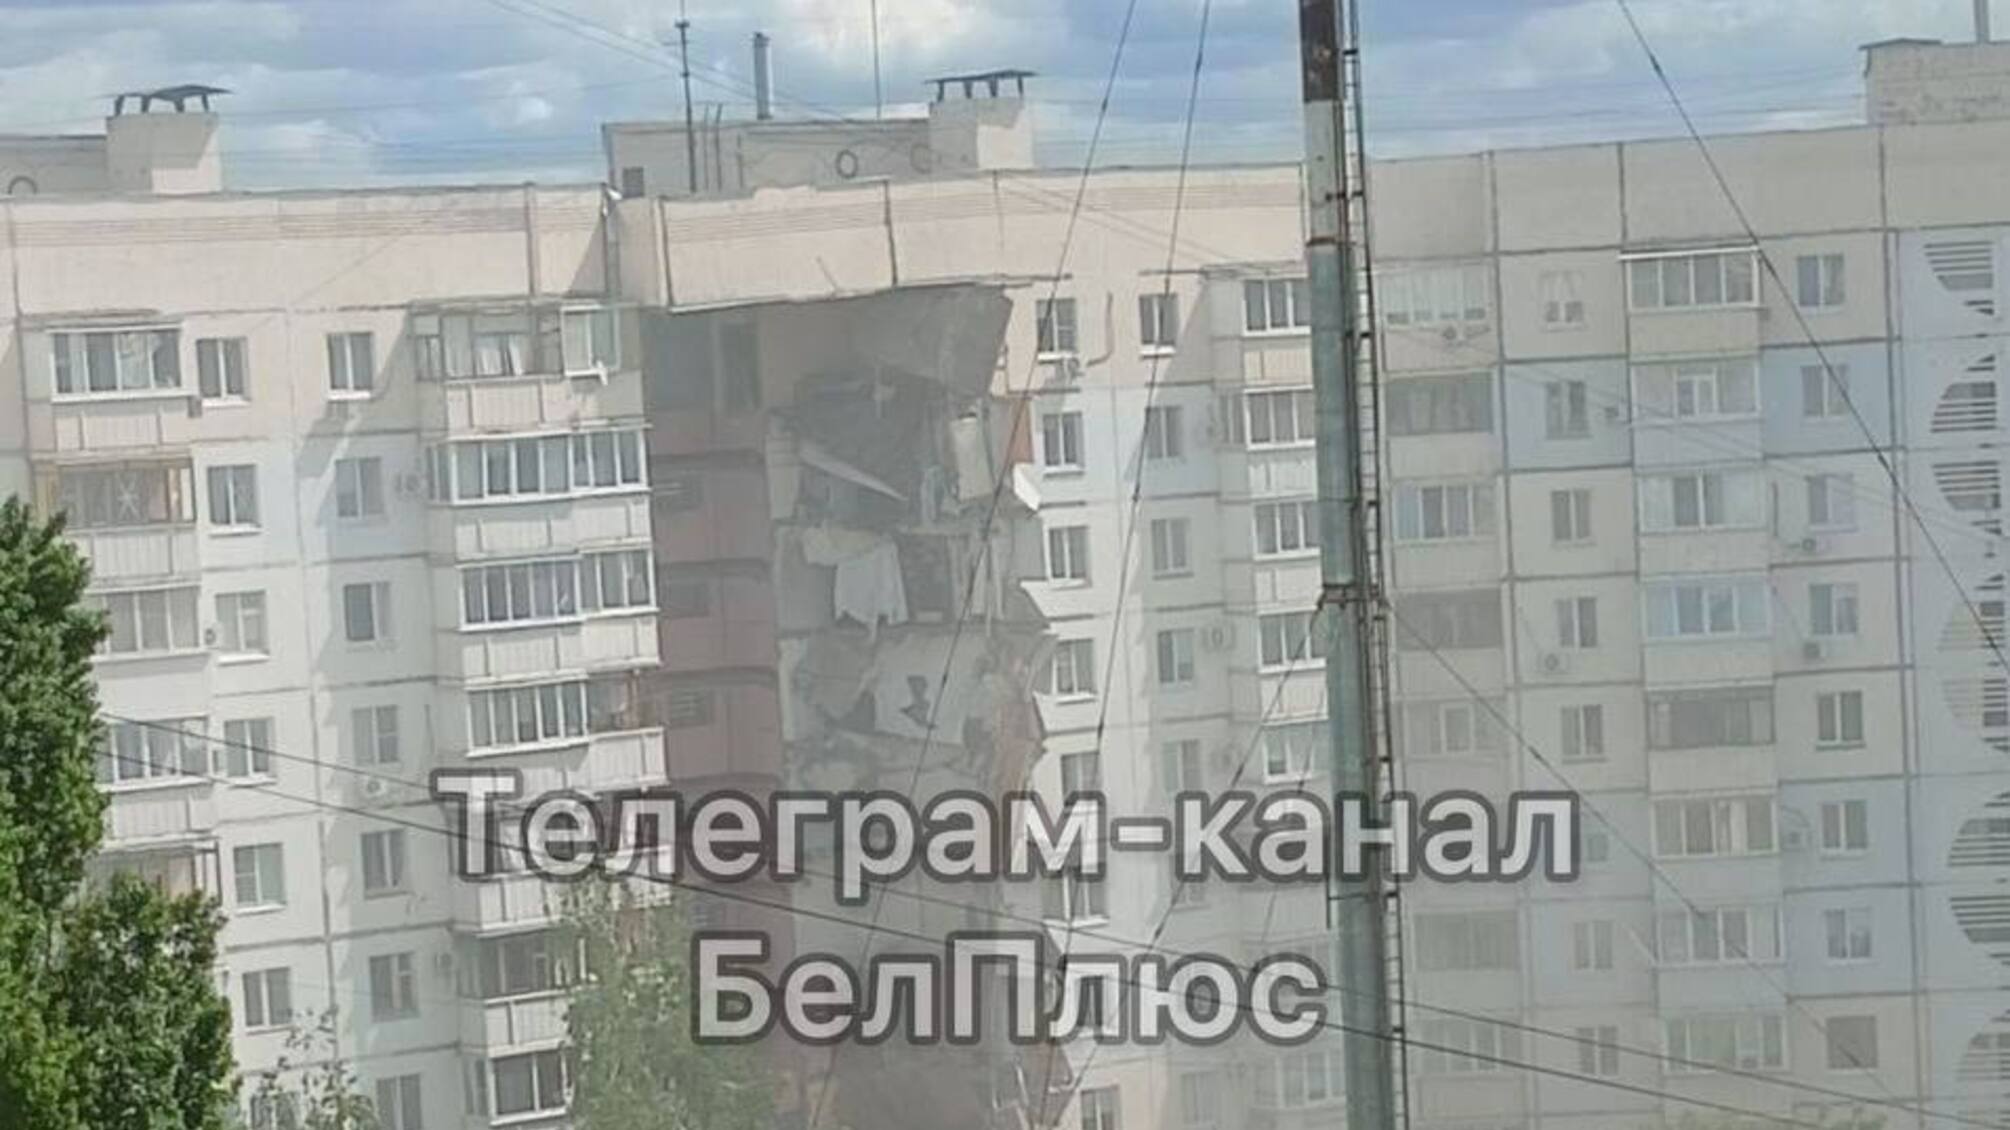 В Белгороде обрушился подъезд многоэтажки, есть погибшие и пострадавшие: власть России обвиняет в этом Украину